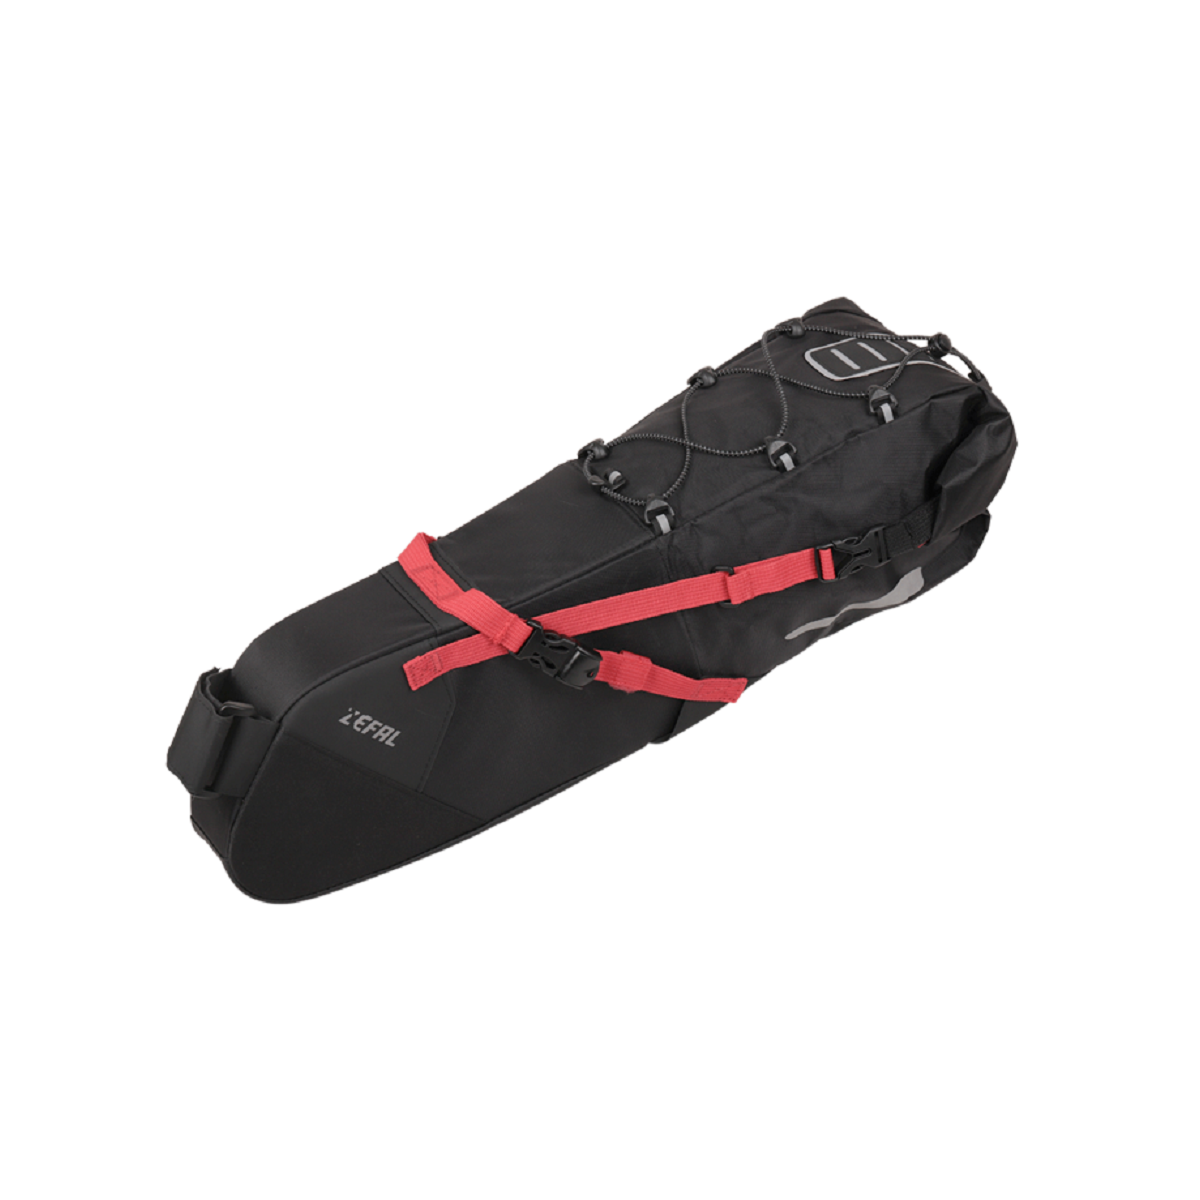 ZEFAL Z ADVENTURE R11 11L saddle bag - black